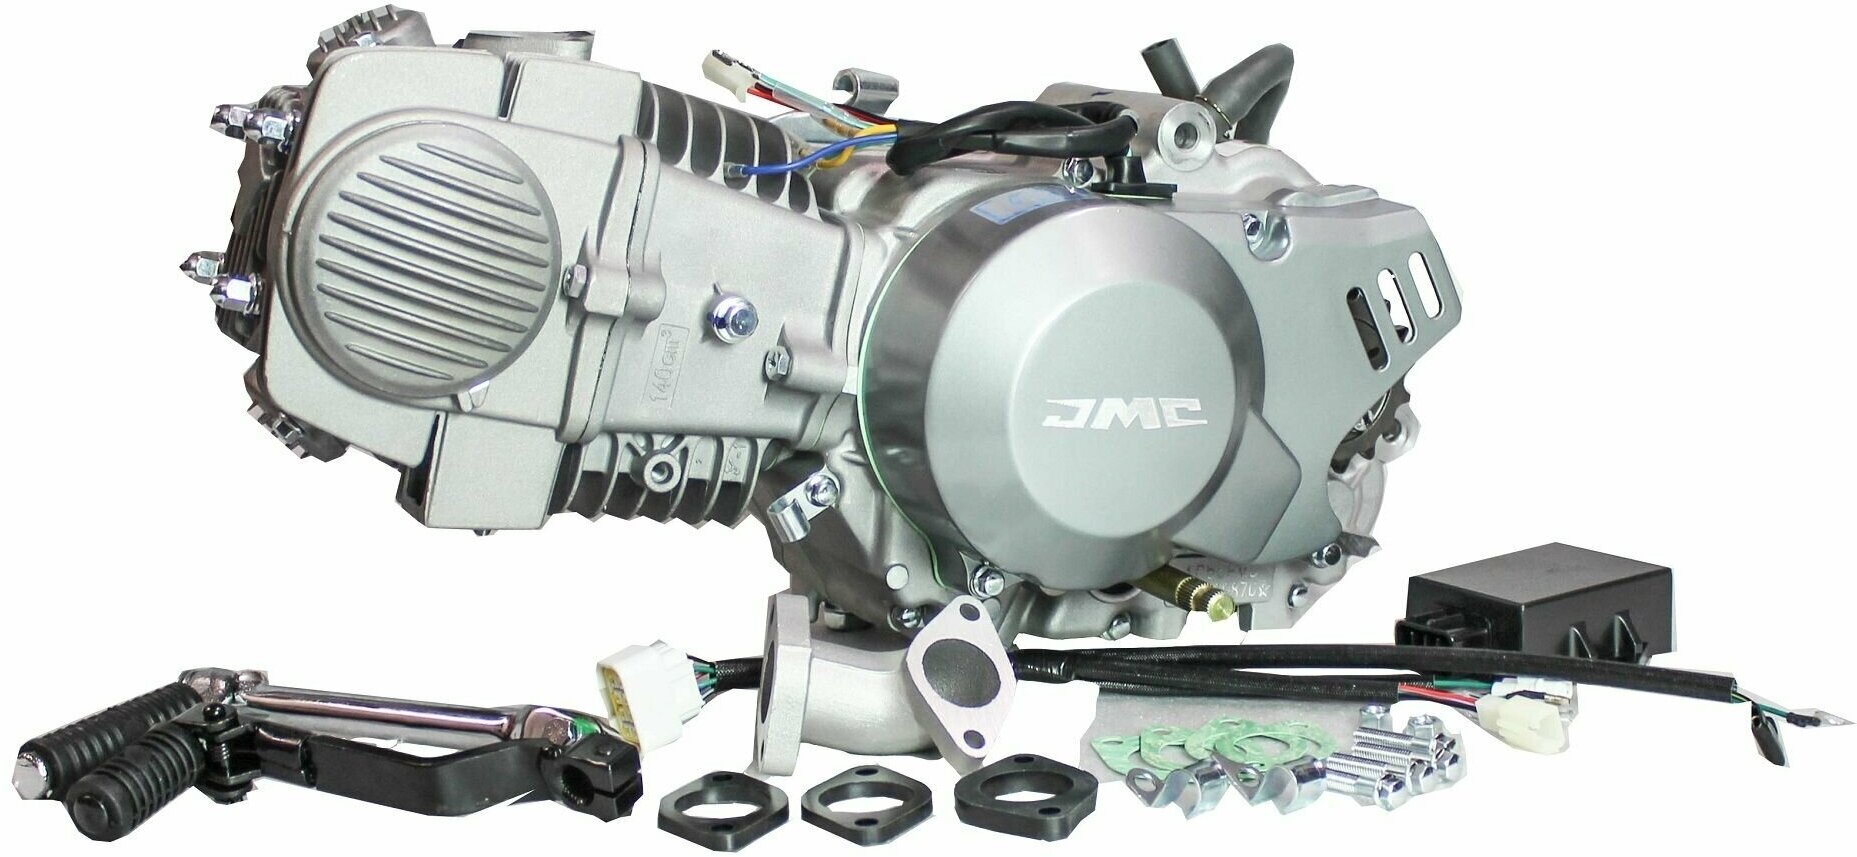 Двигатель JMC YX 140сс 1P56FMJ W063 Racing Version для питбайка